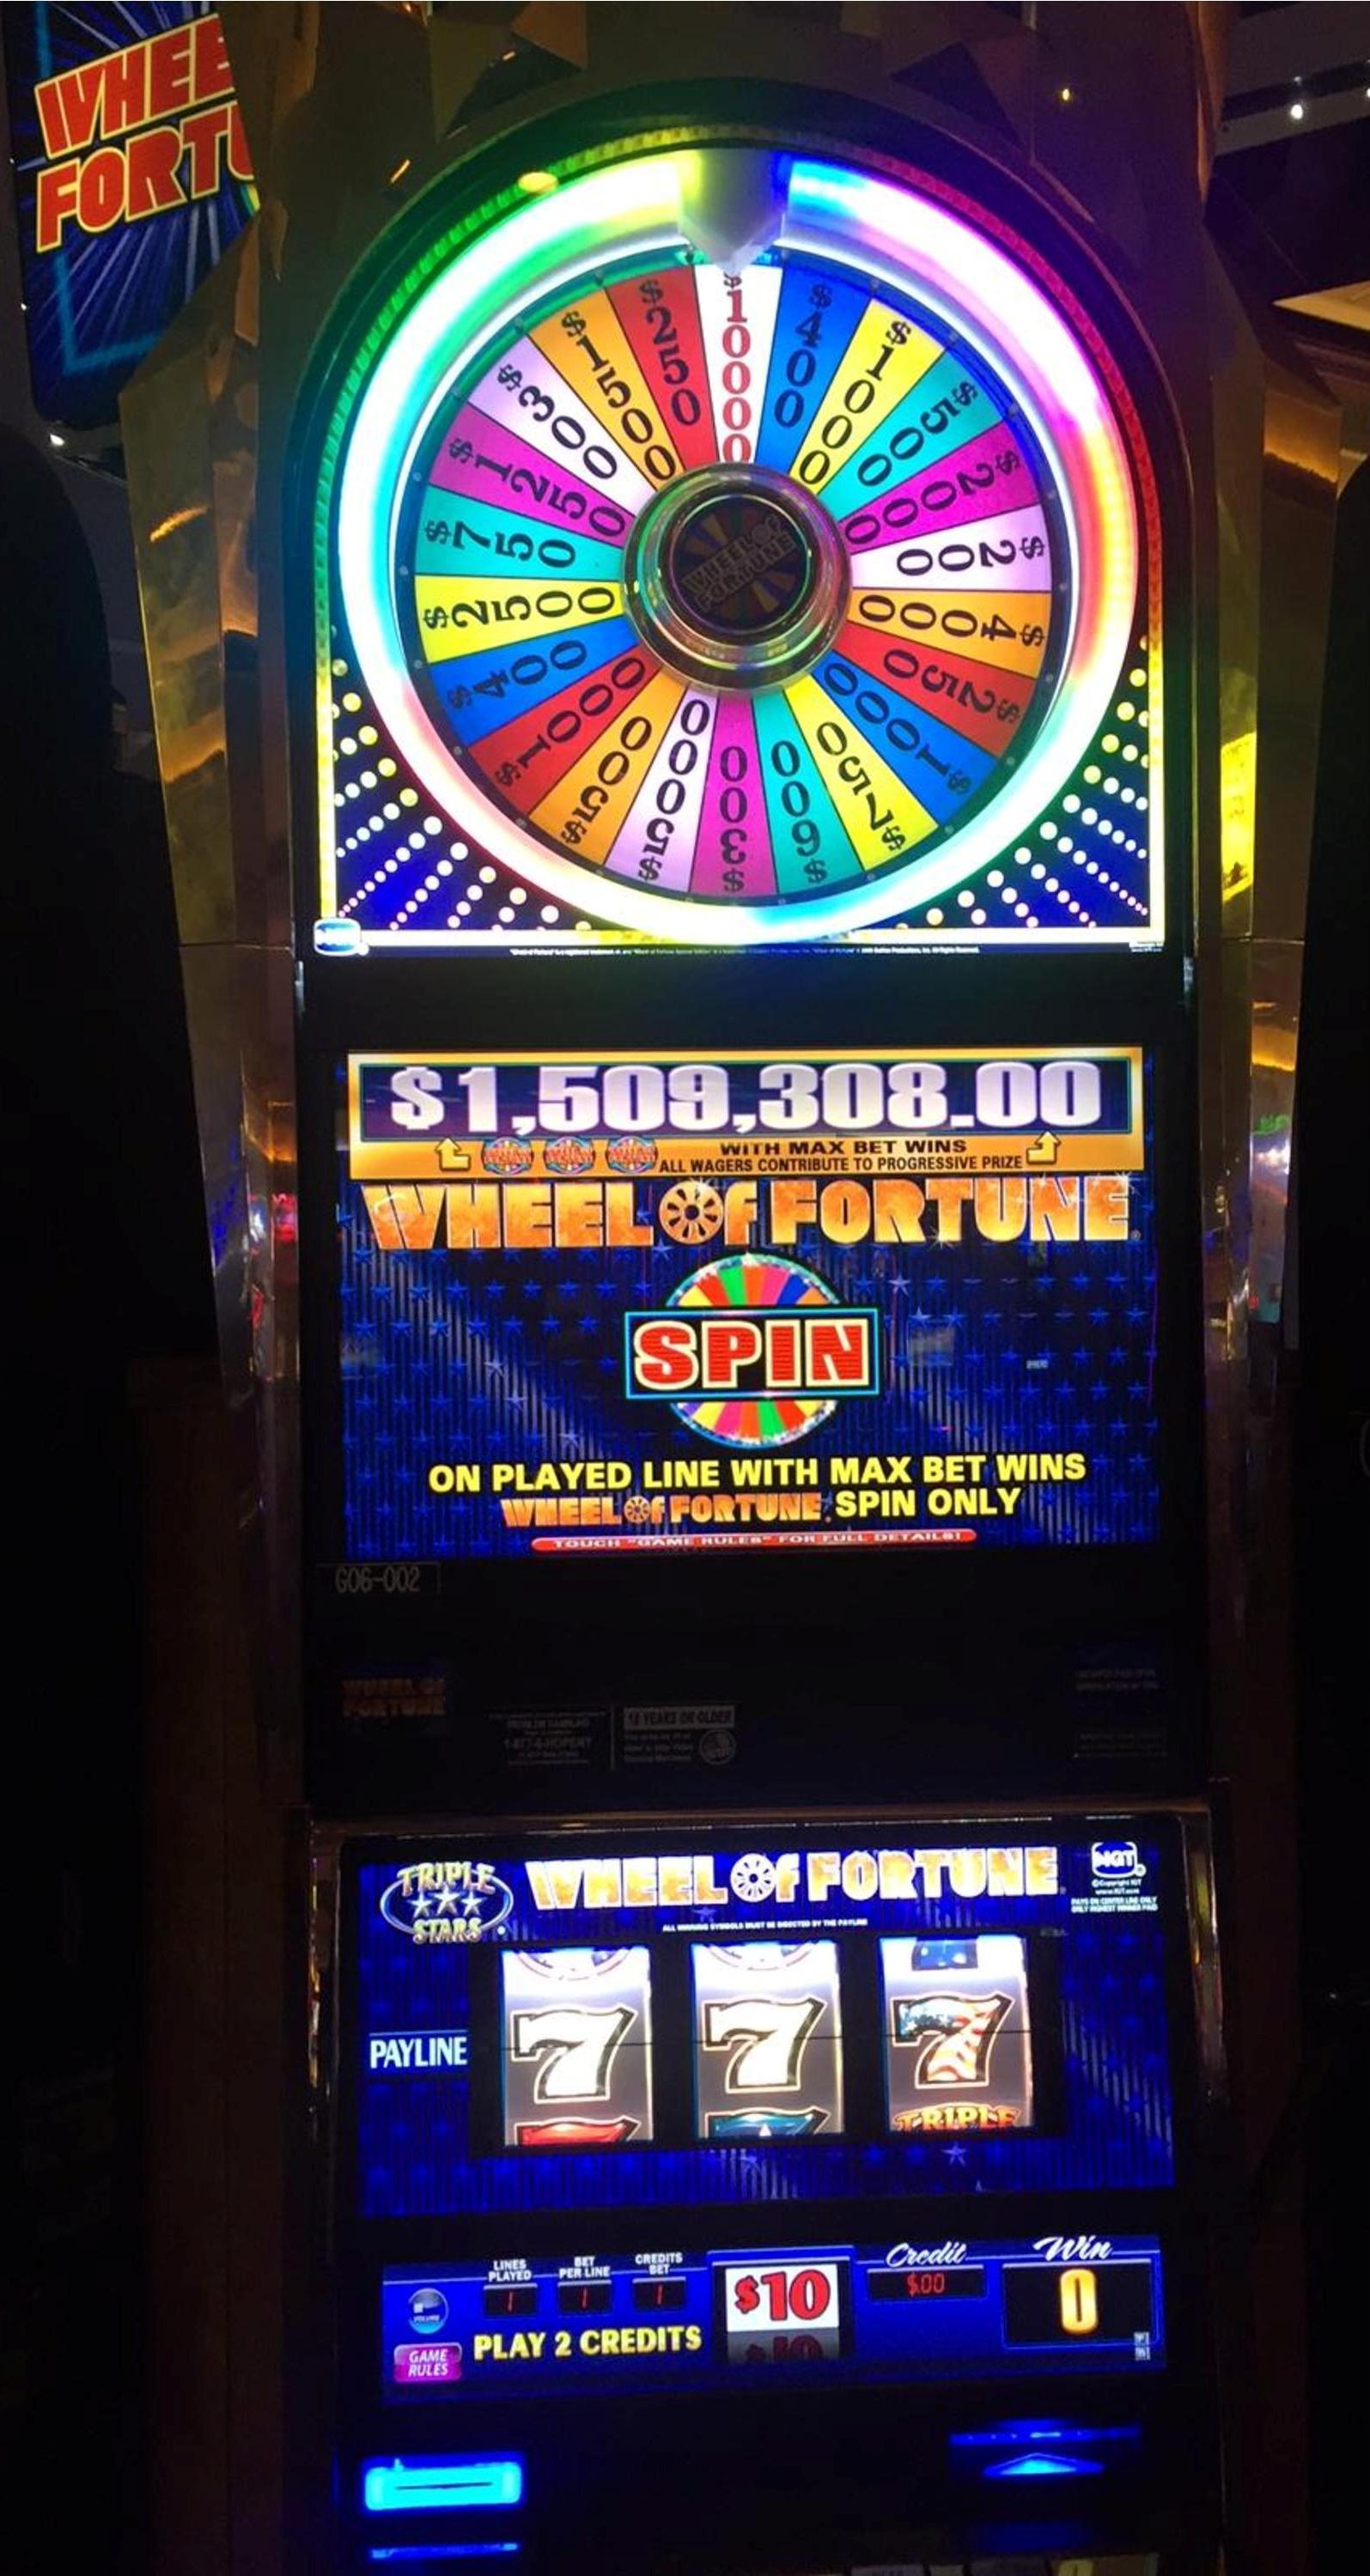 Empire City Casino Jackpot is NYS record $1.5 million